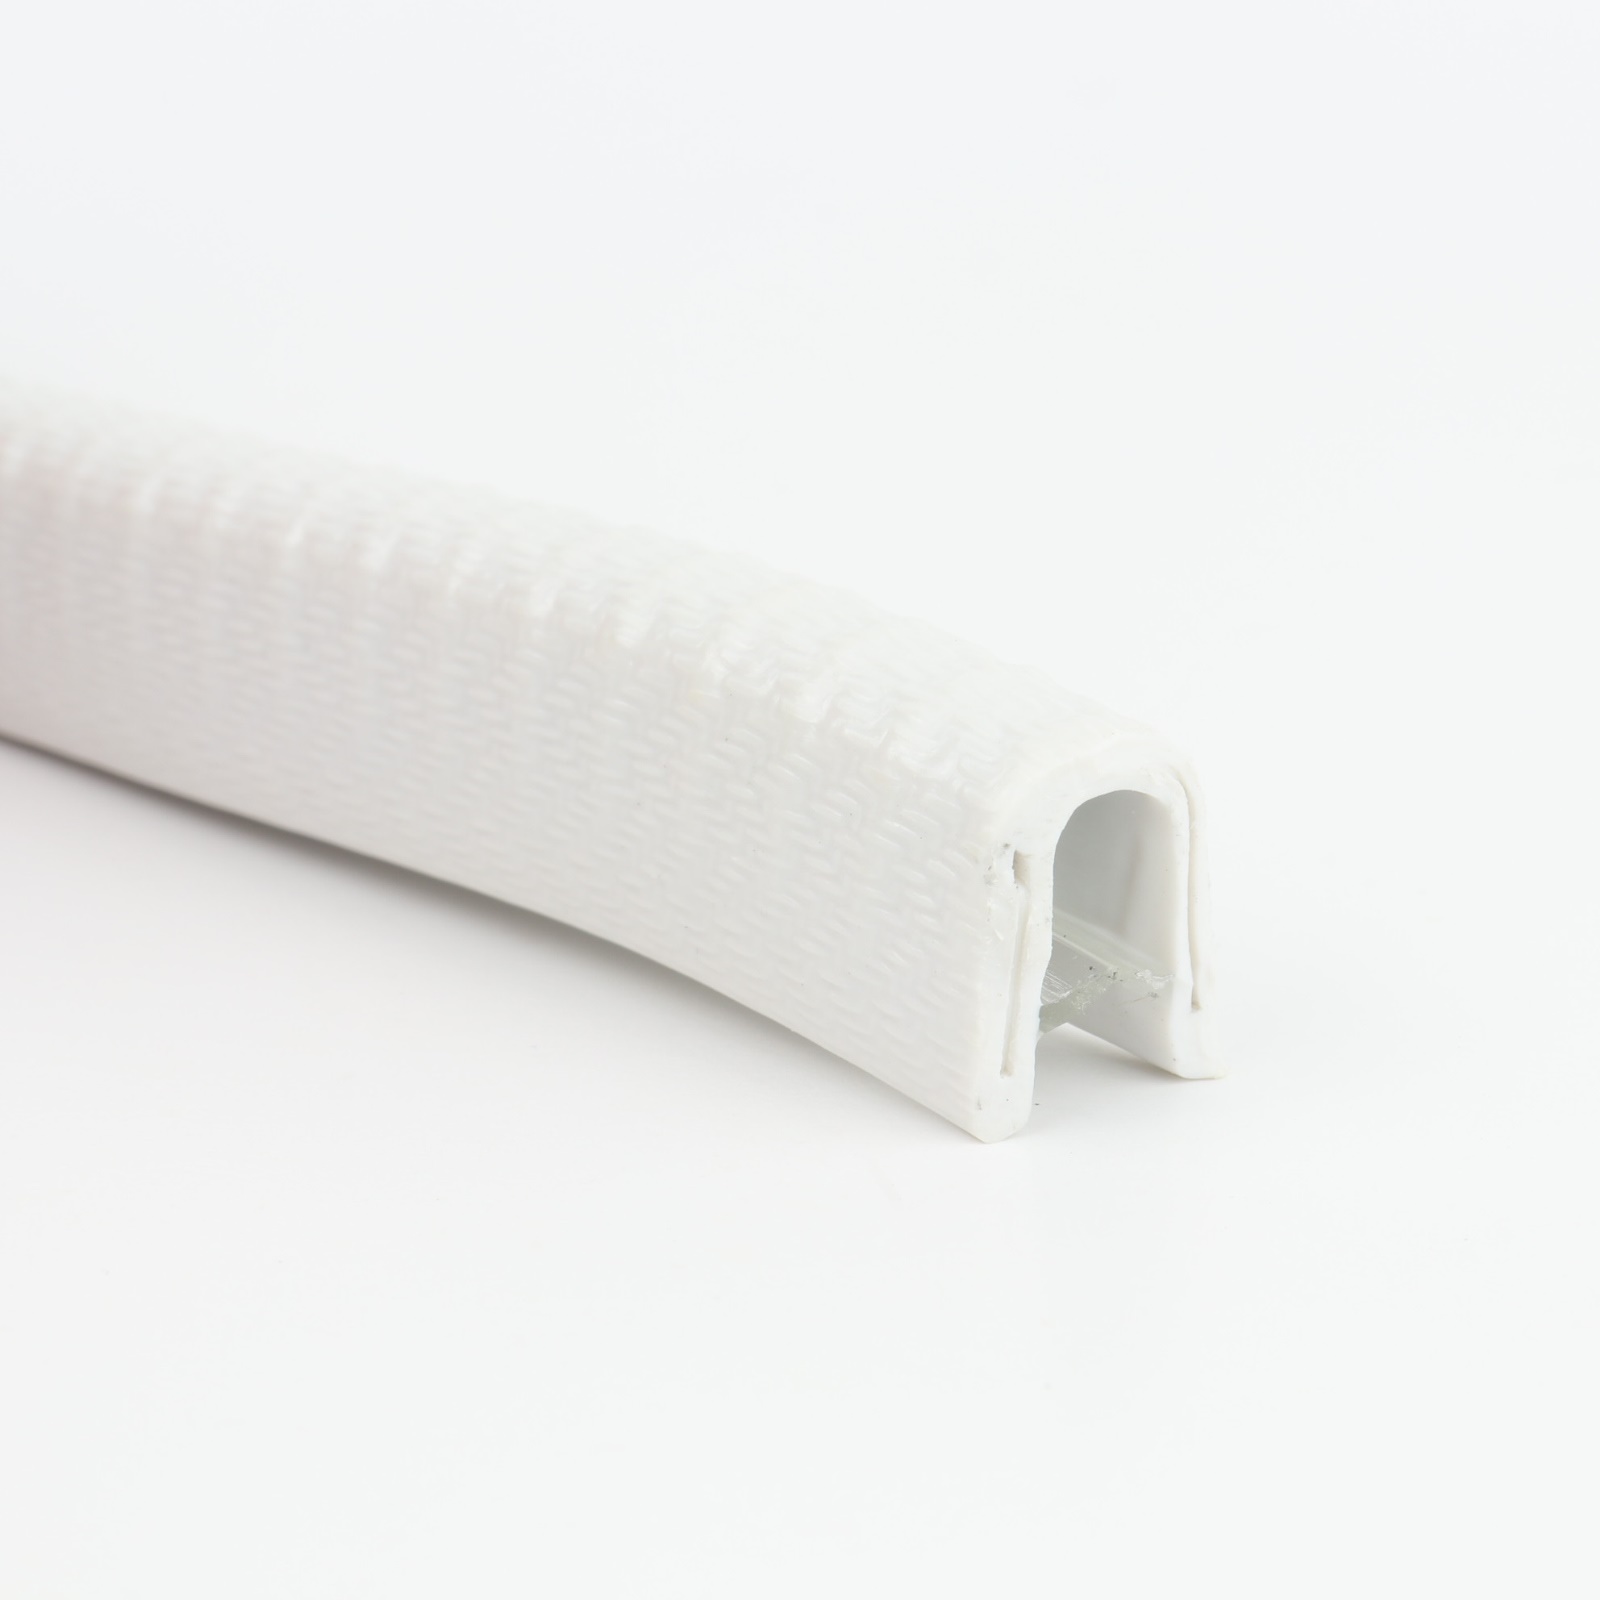 Kantenschutzprofil - PVC - weissgrau - Klemmbereich 1-4mm